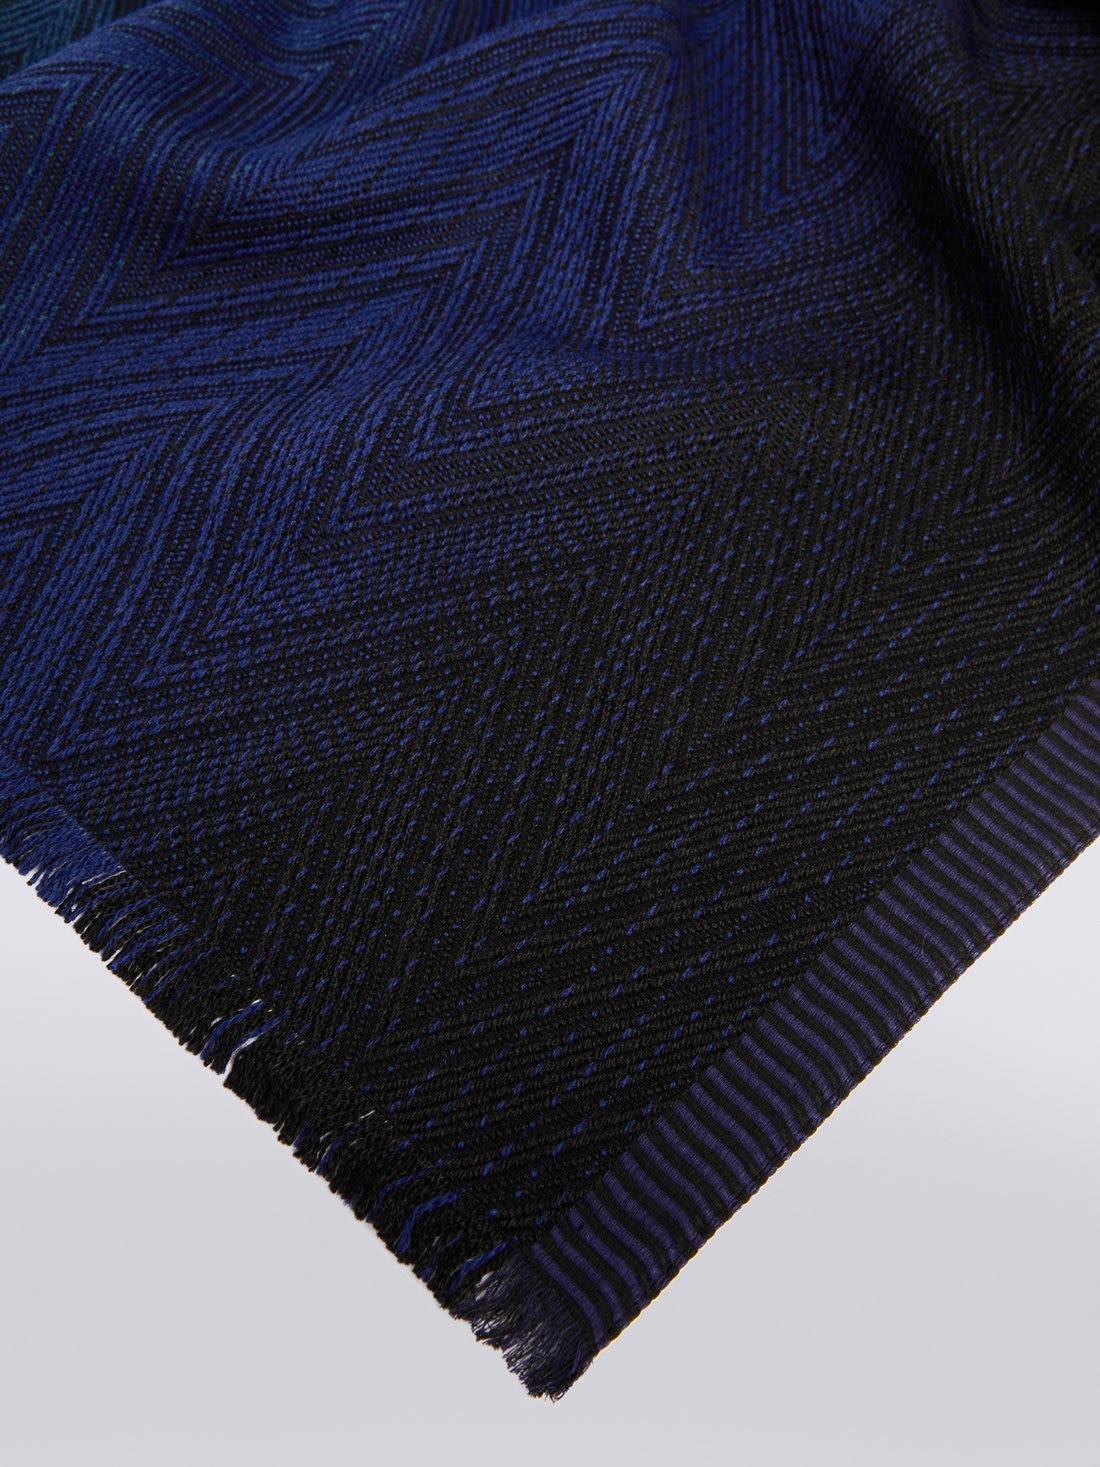 Stola in maglia di viscosa e lana chevron con bordi sfrangiati, Multicolore  - 8053147023298 - 1